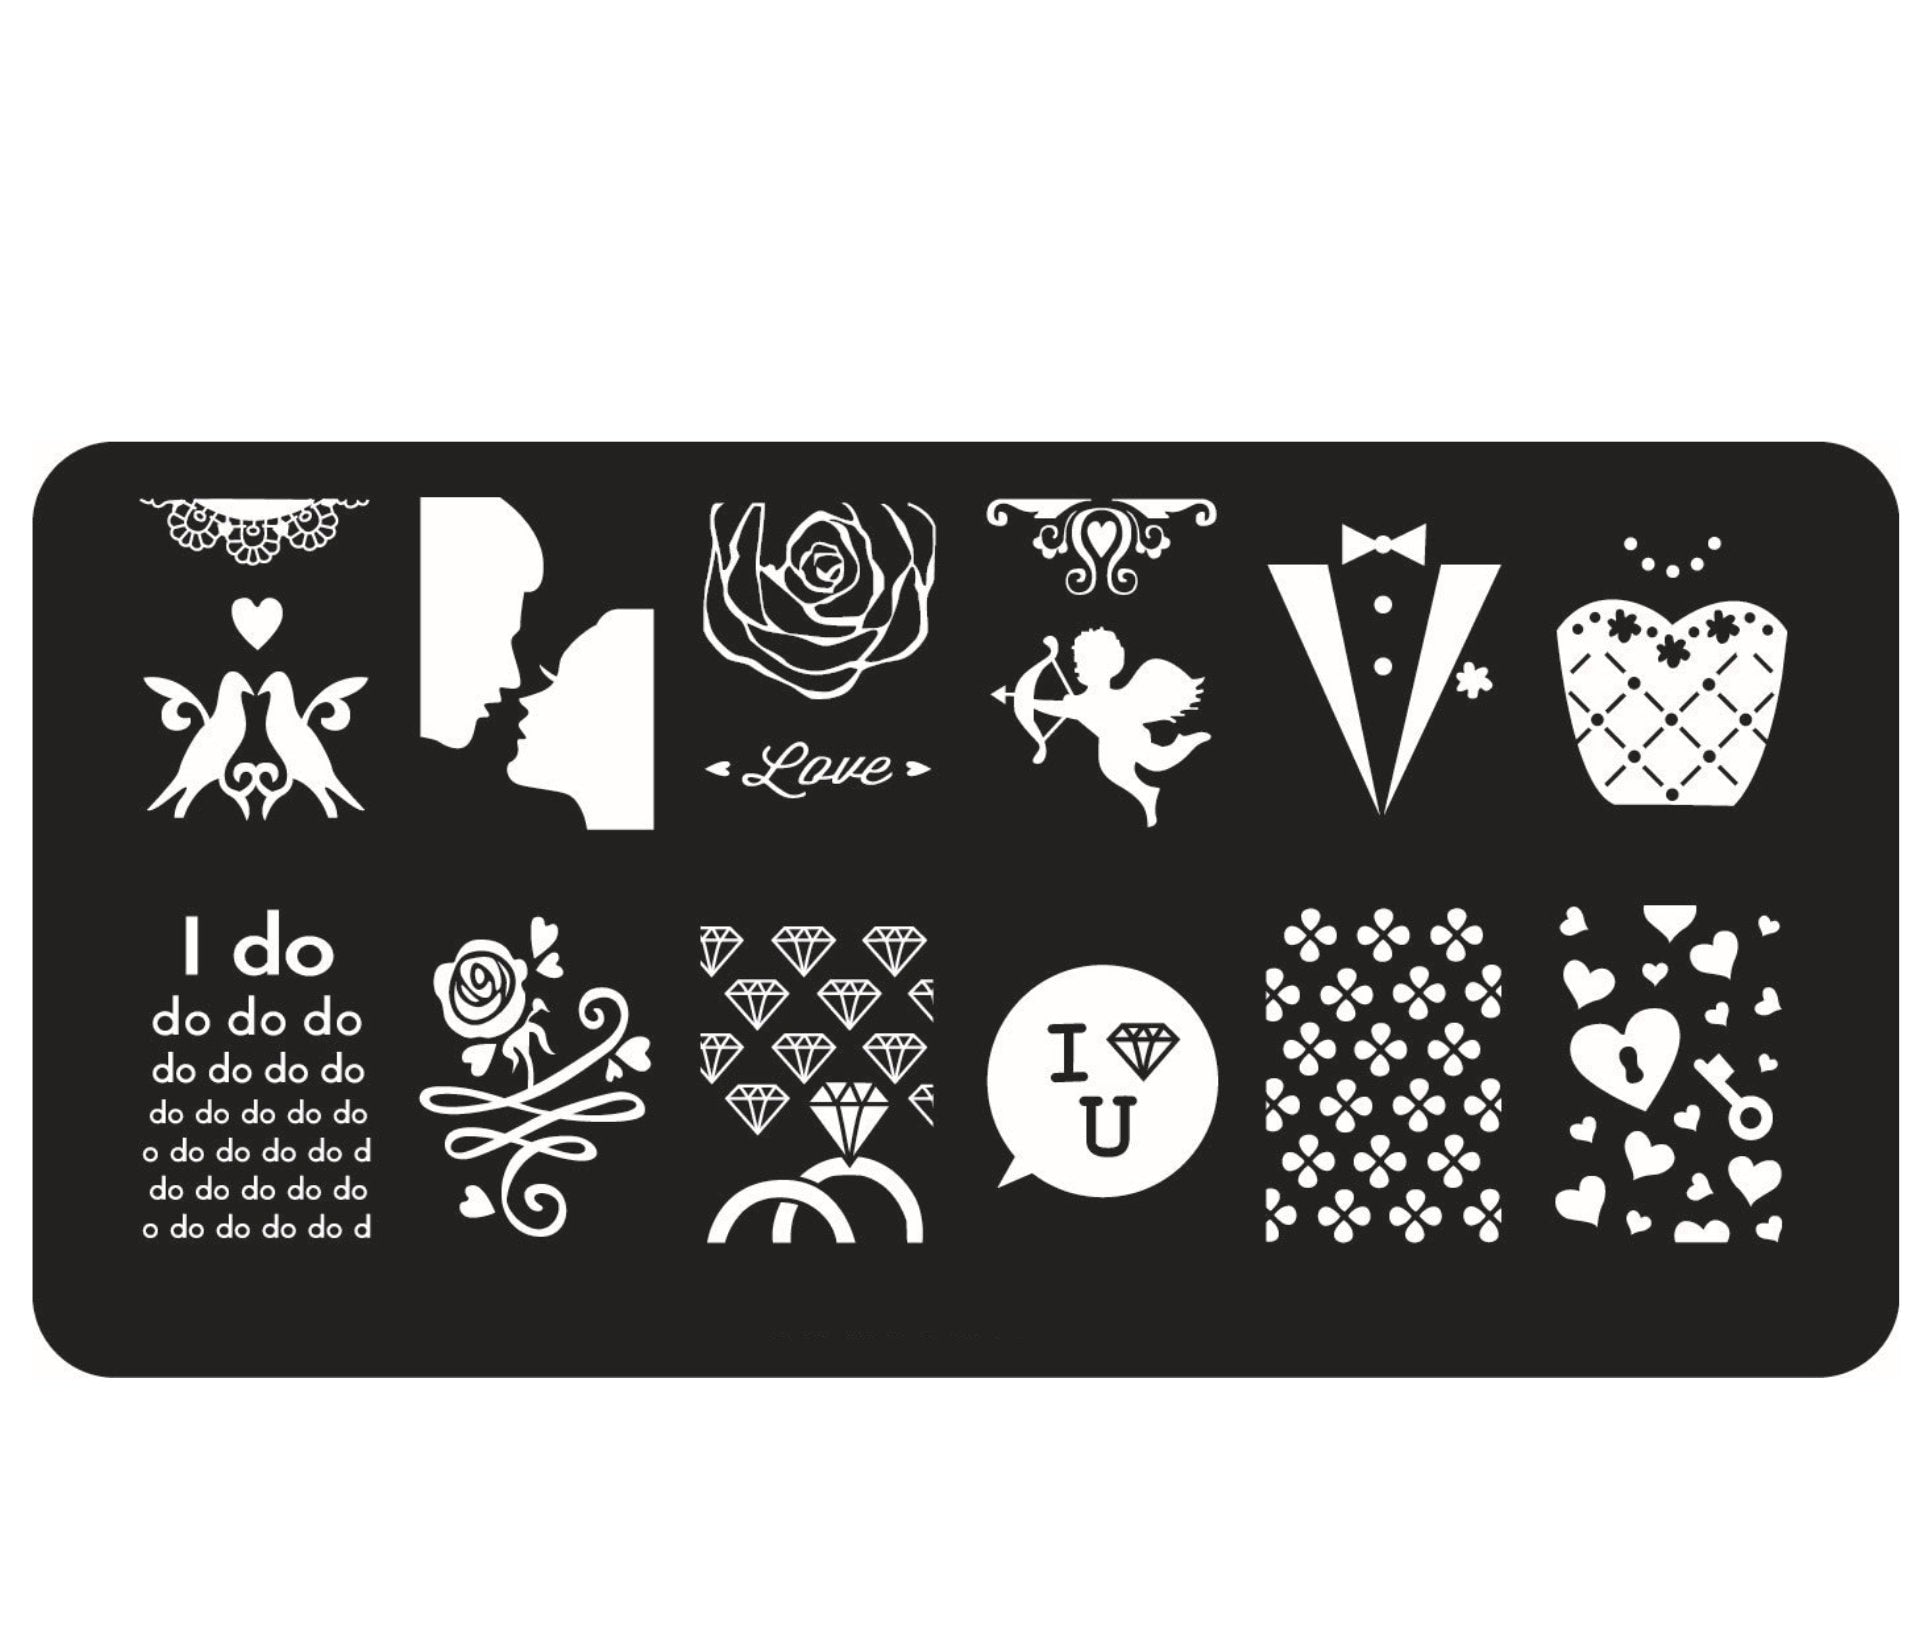 Love and masquerade Nail Art Stamping Image Plates/ Wedding design Stamping Image Plates Manicure Nail Designs DIY/ Stamping Templates